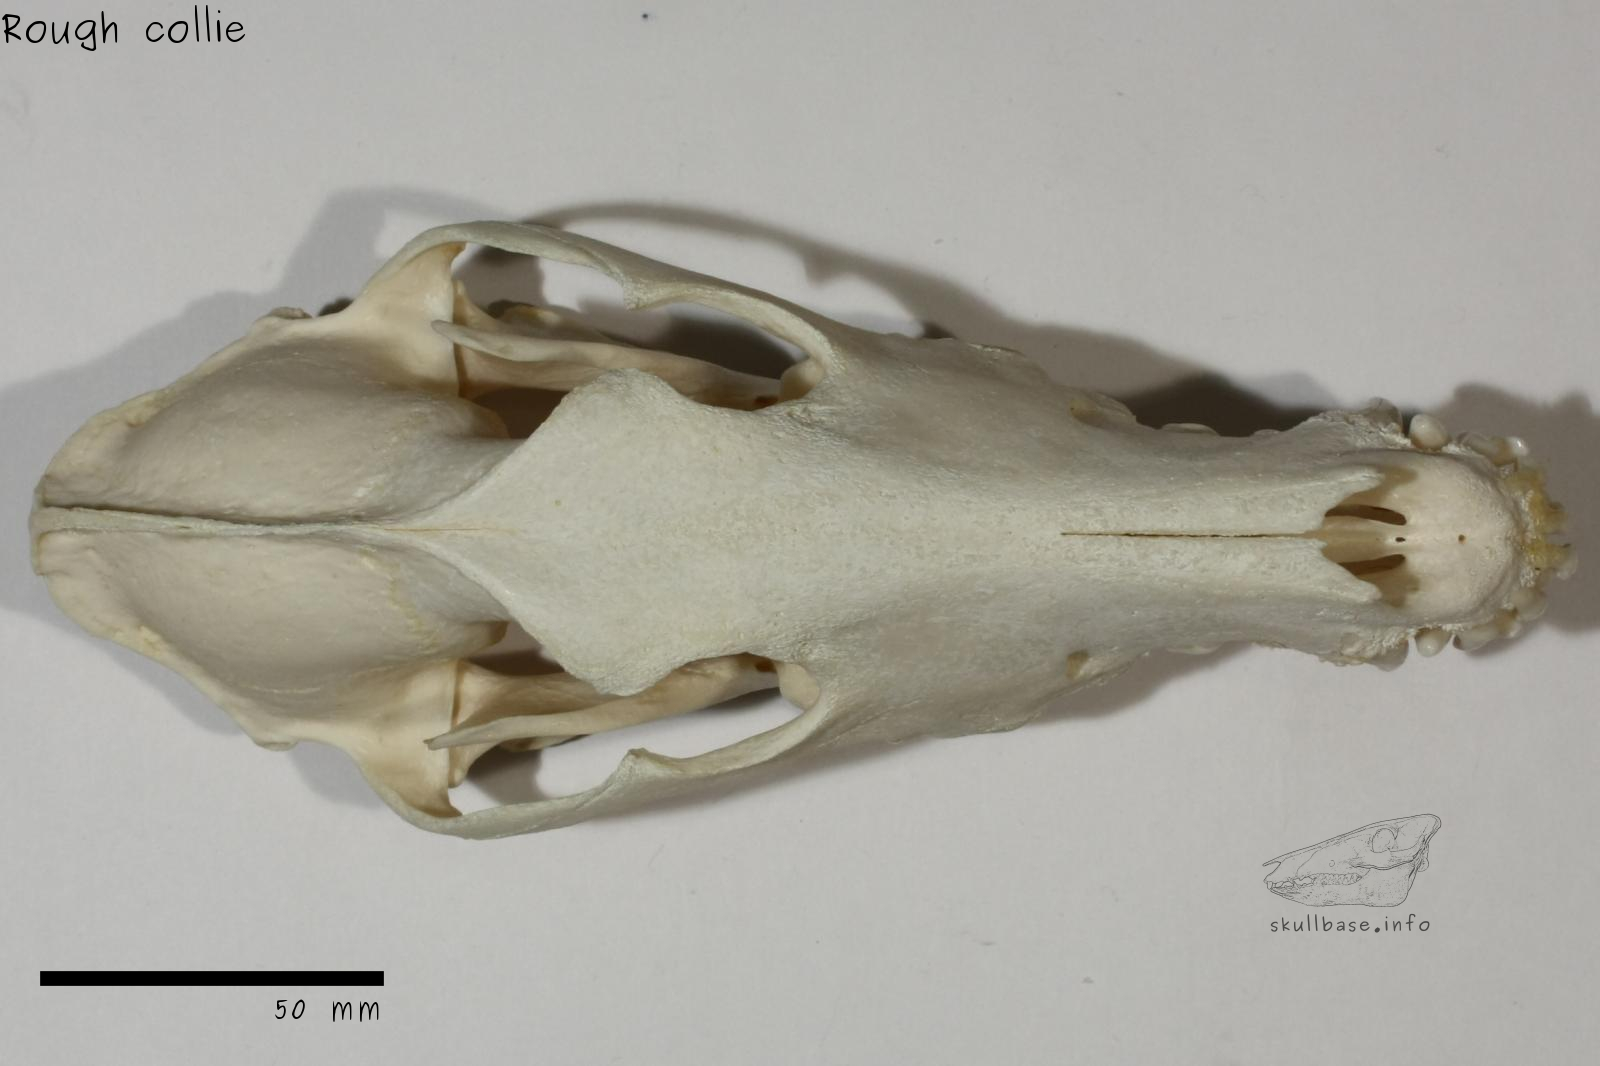 Rough collie (Canis lupus familiaris) skull dorsal view